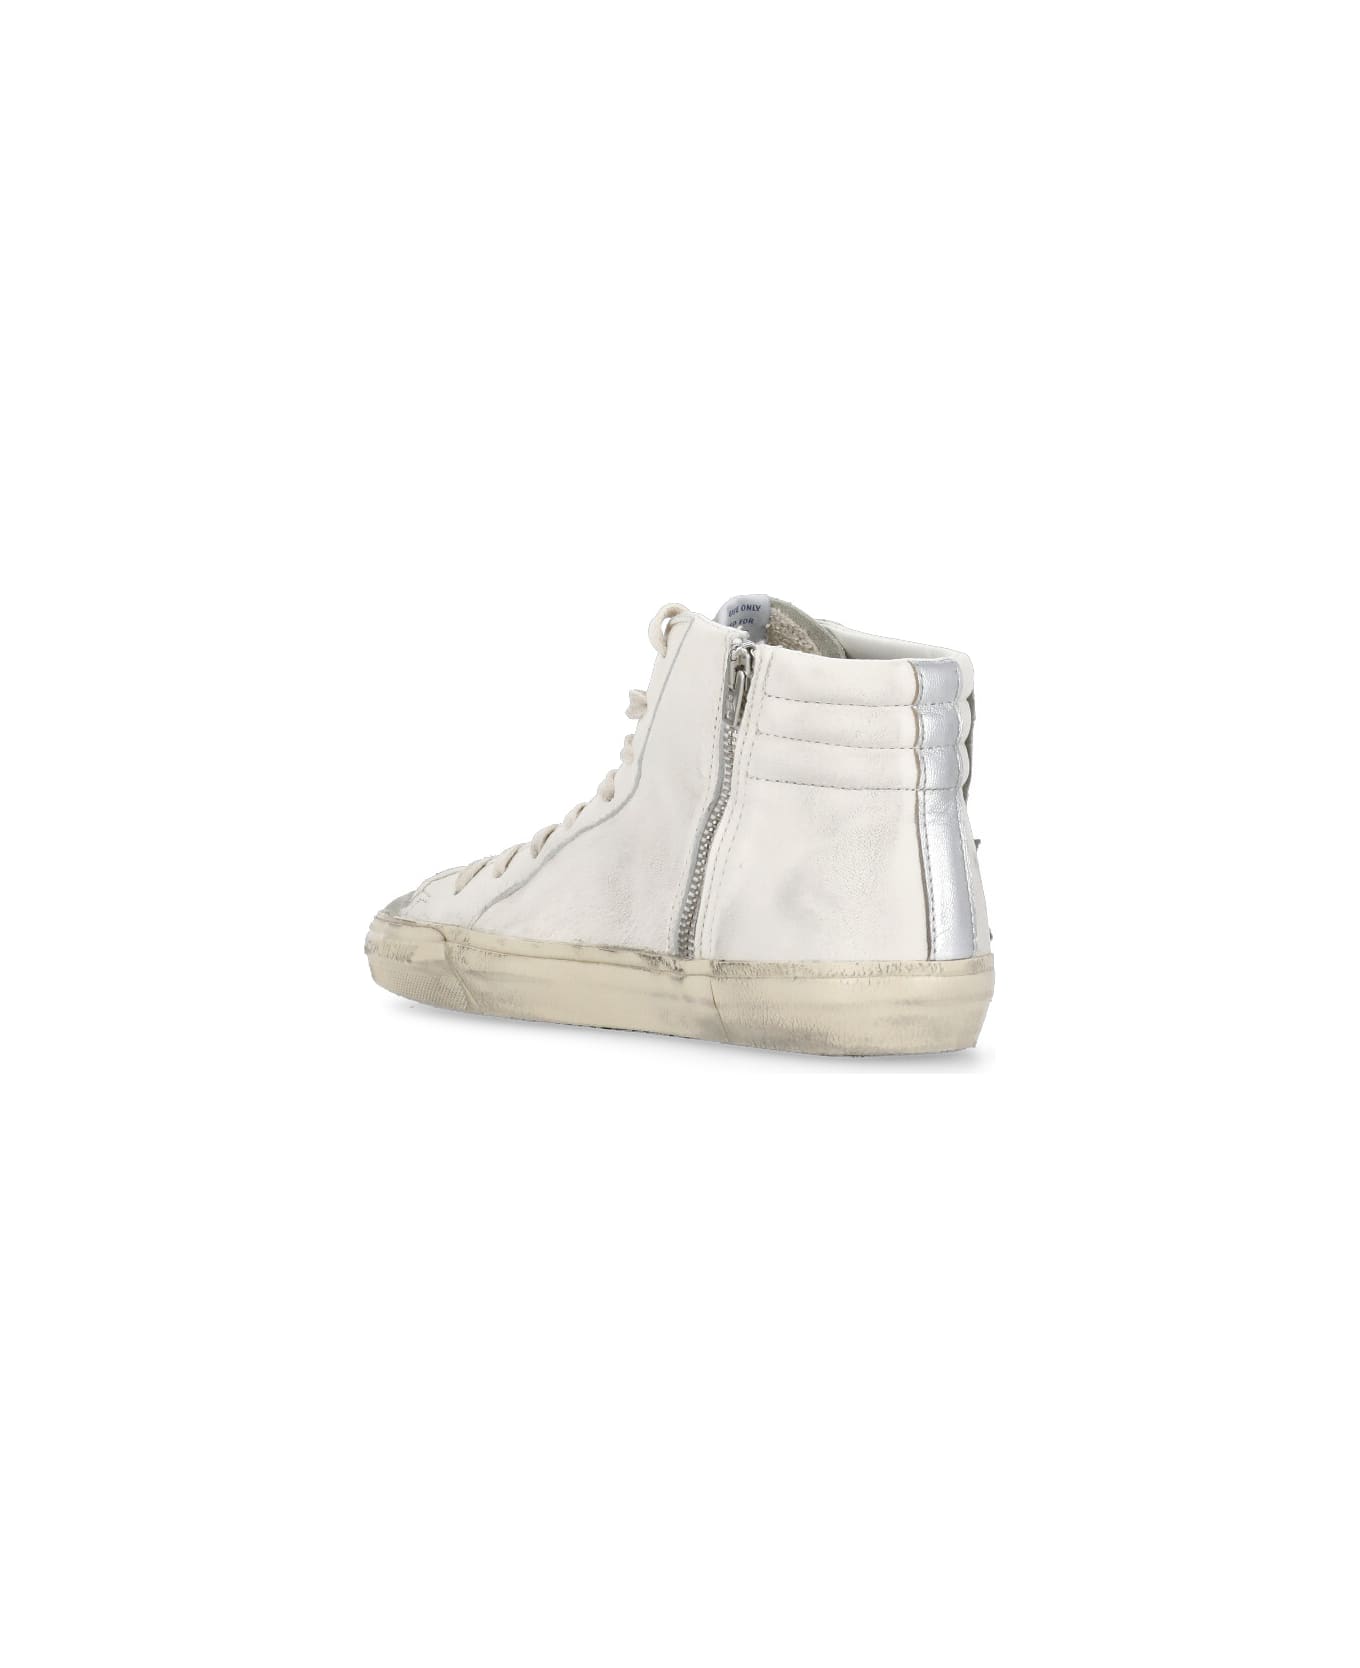 Golden Goose Slide Sneakers - White スニーカー